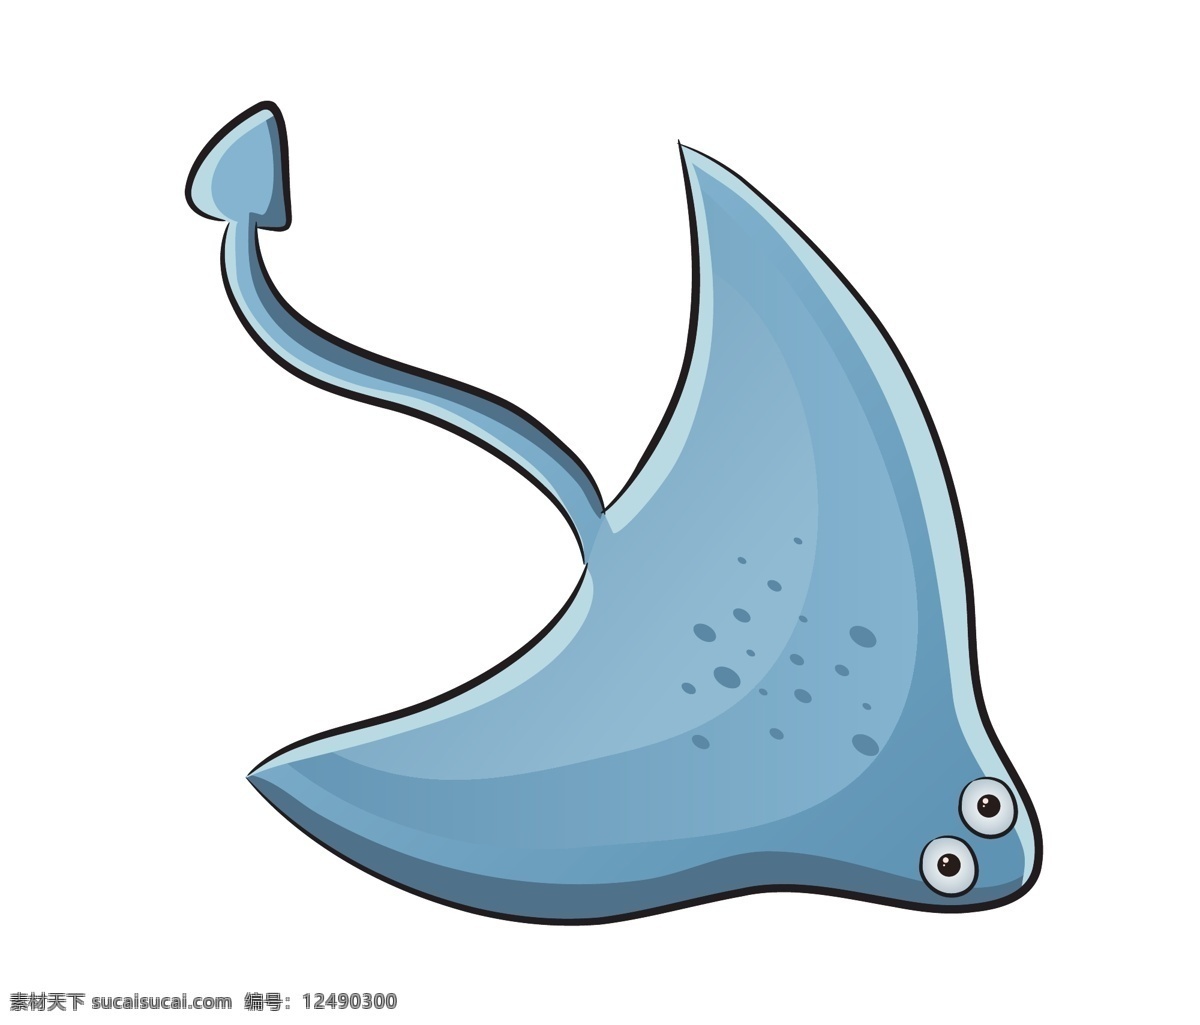 蓝色 卡通 小鱼 海洋生物 模板下载 海洋 鱼 矢量生物 海底 海鲜 矢量